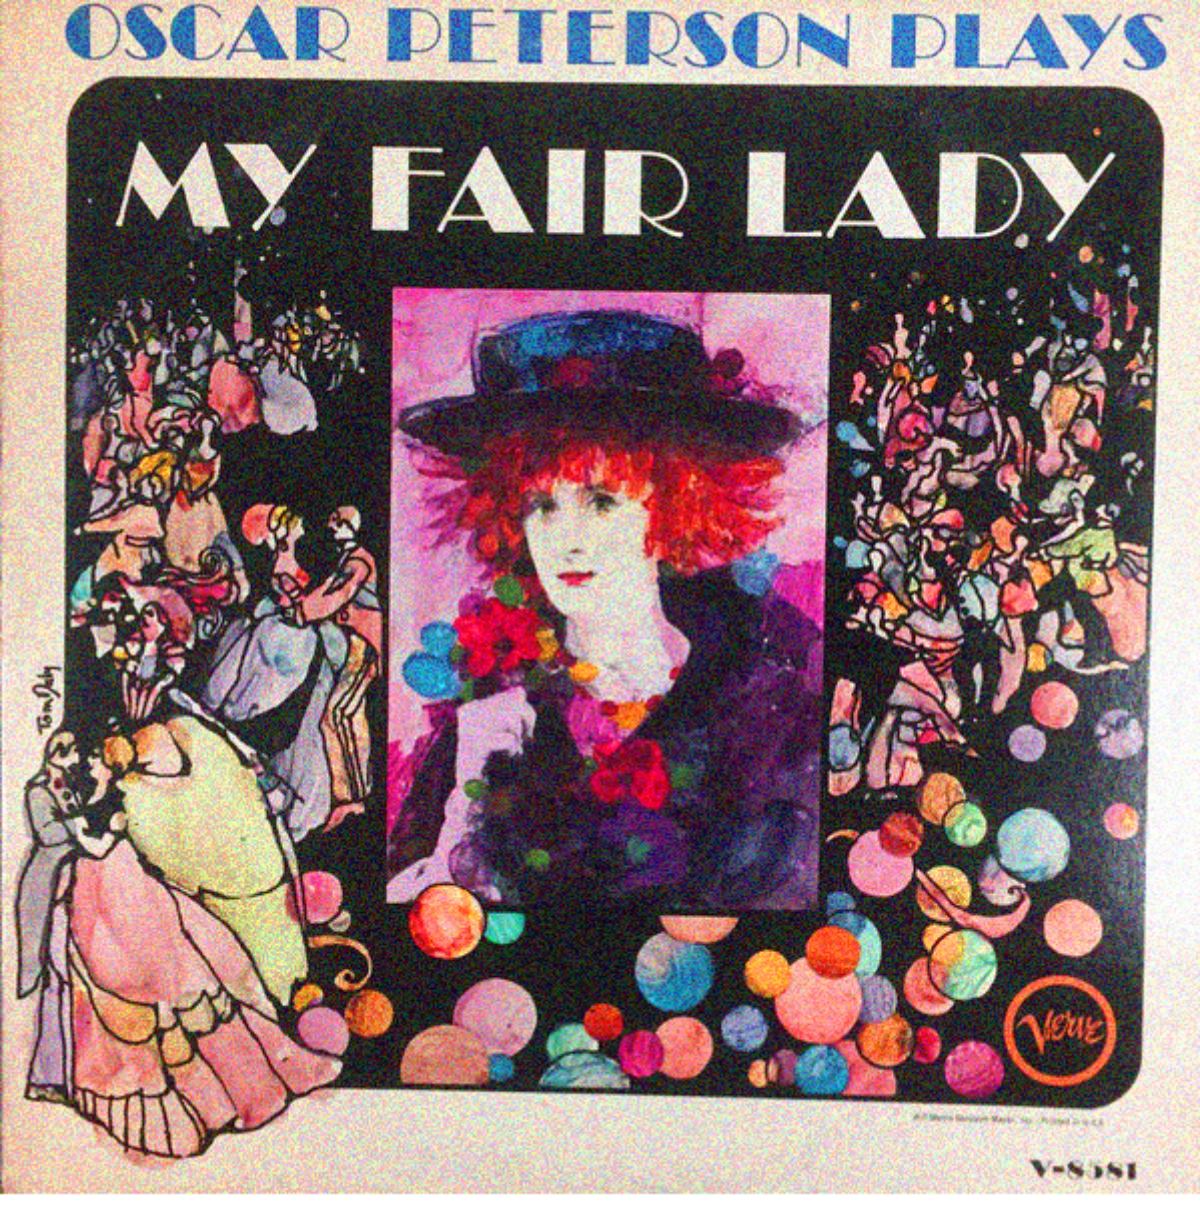 My Fair Lady (album cover)